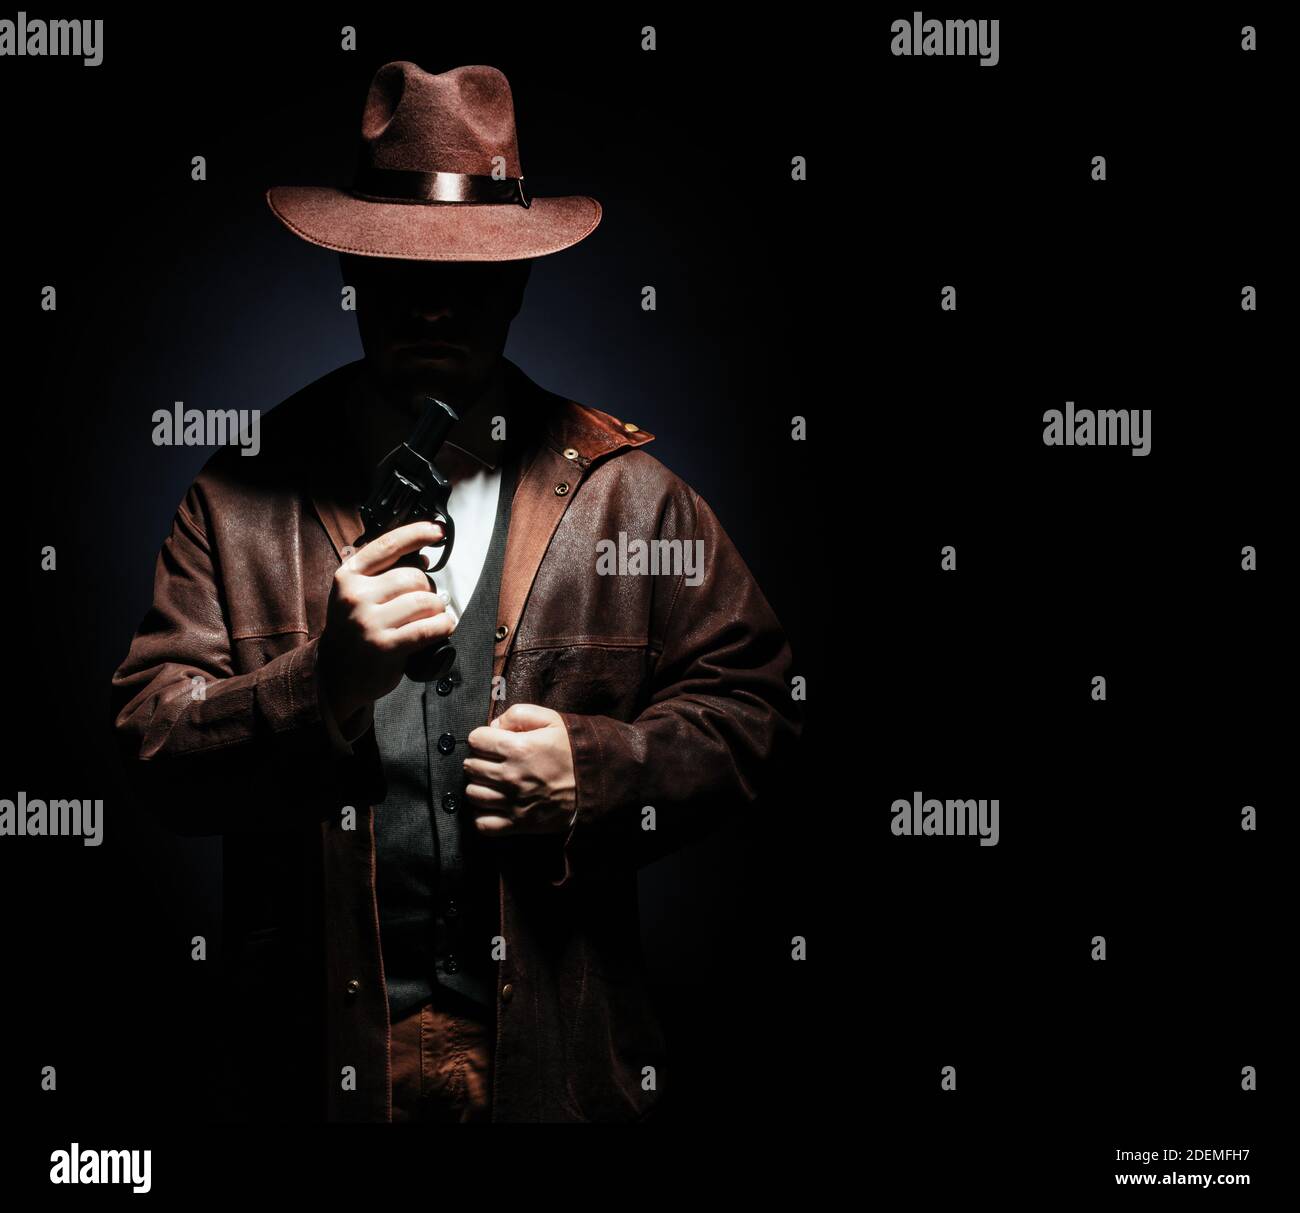 Foto eines schattigen Detektivs in Jacke und Hut mit einem Revolvergewehr auf schwarzem Hintergrund. Stockfoto